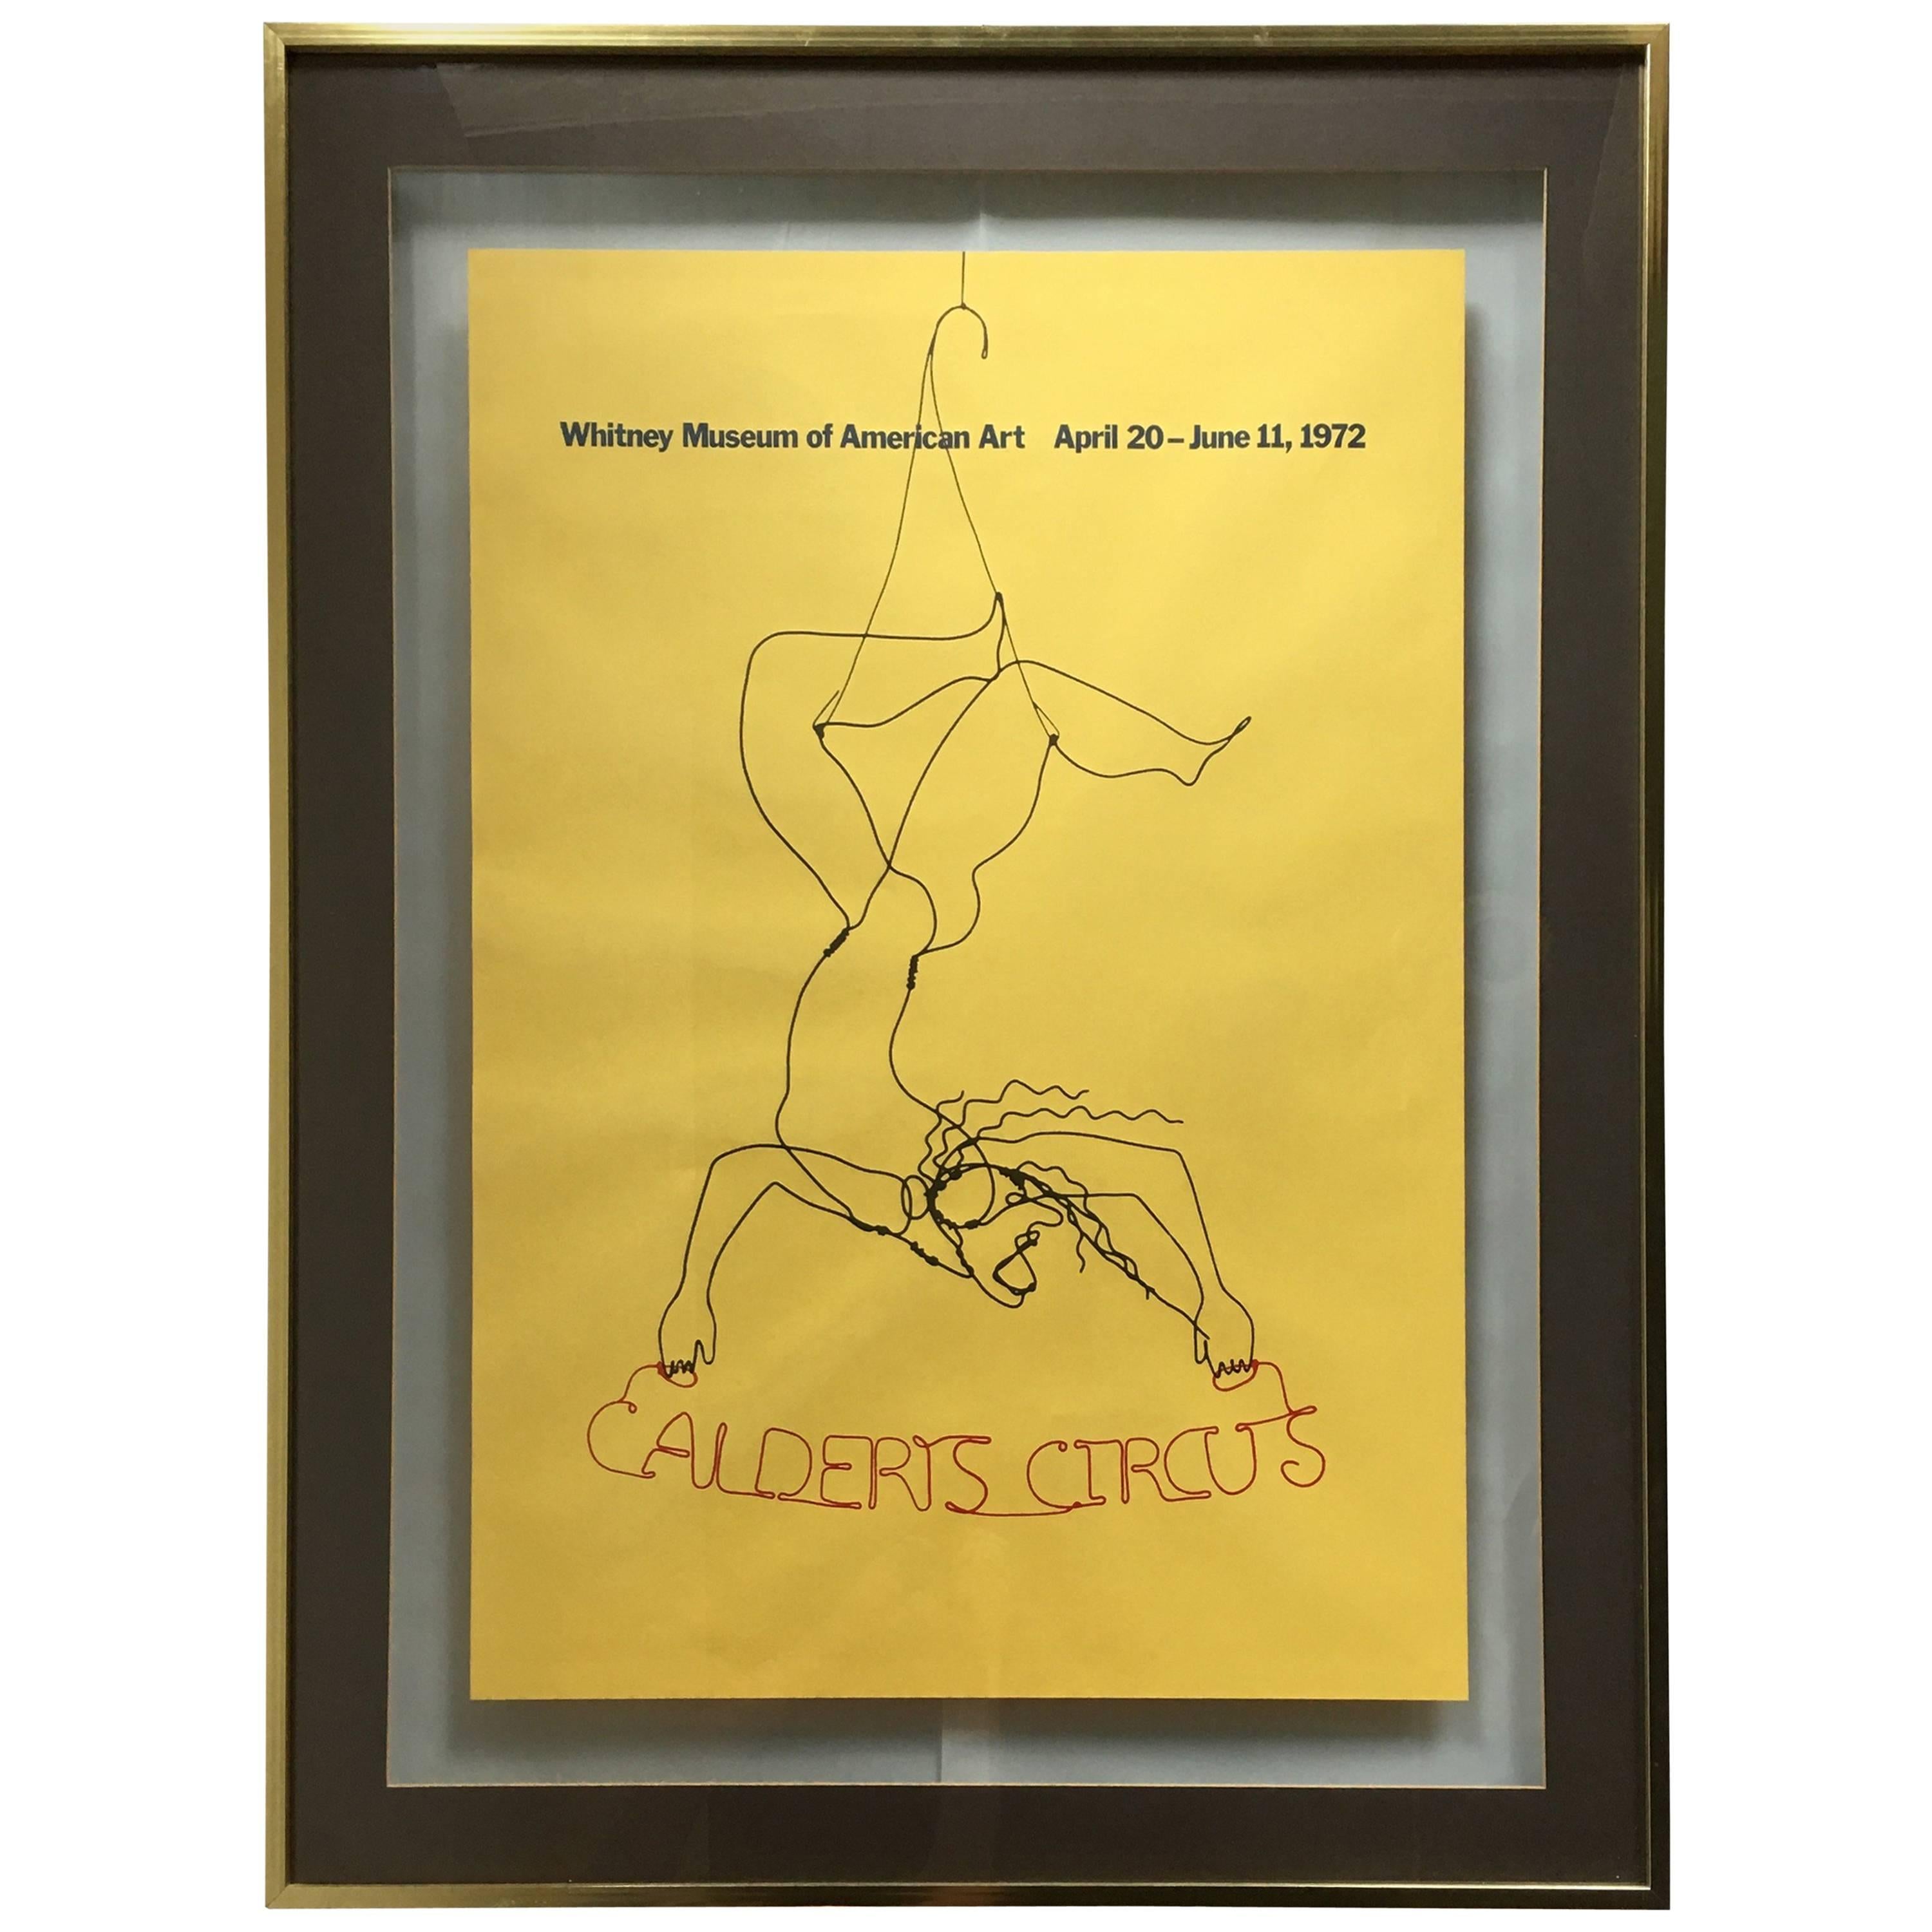 "Calder's Circus" Alexander Calder Exhibition Poster, 1972